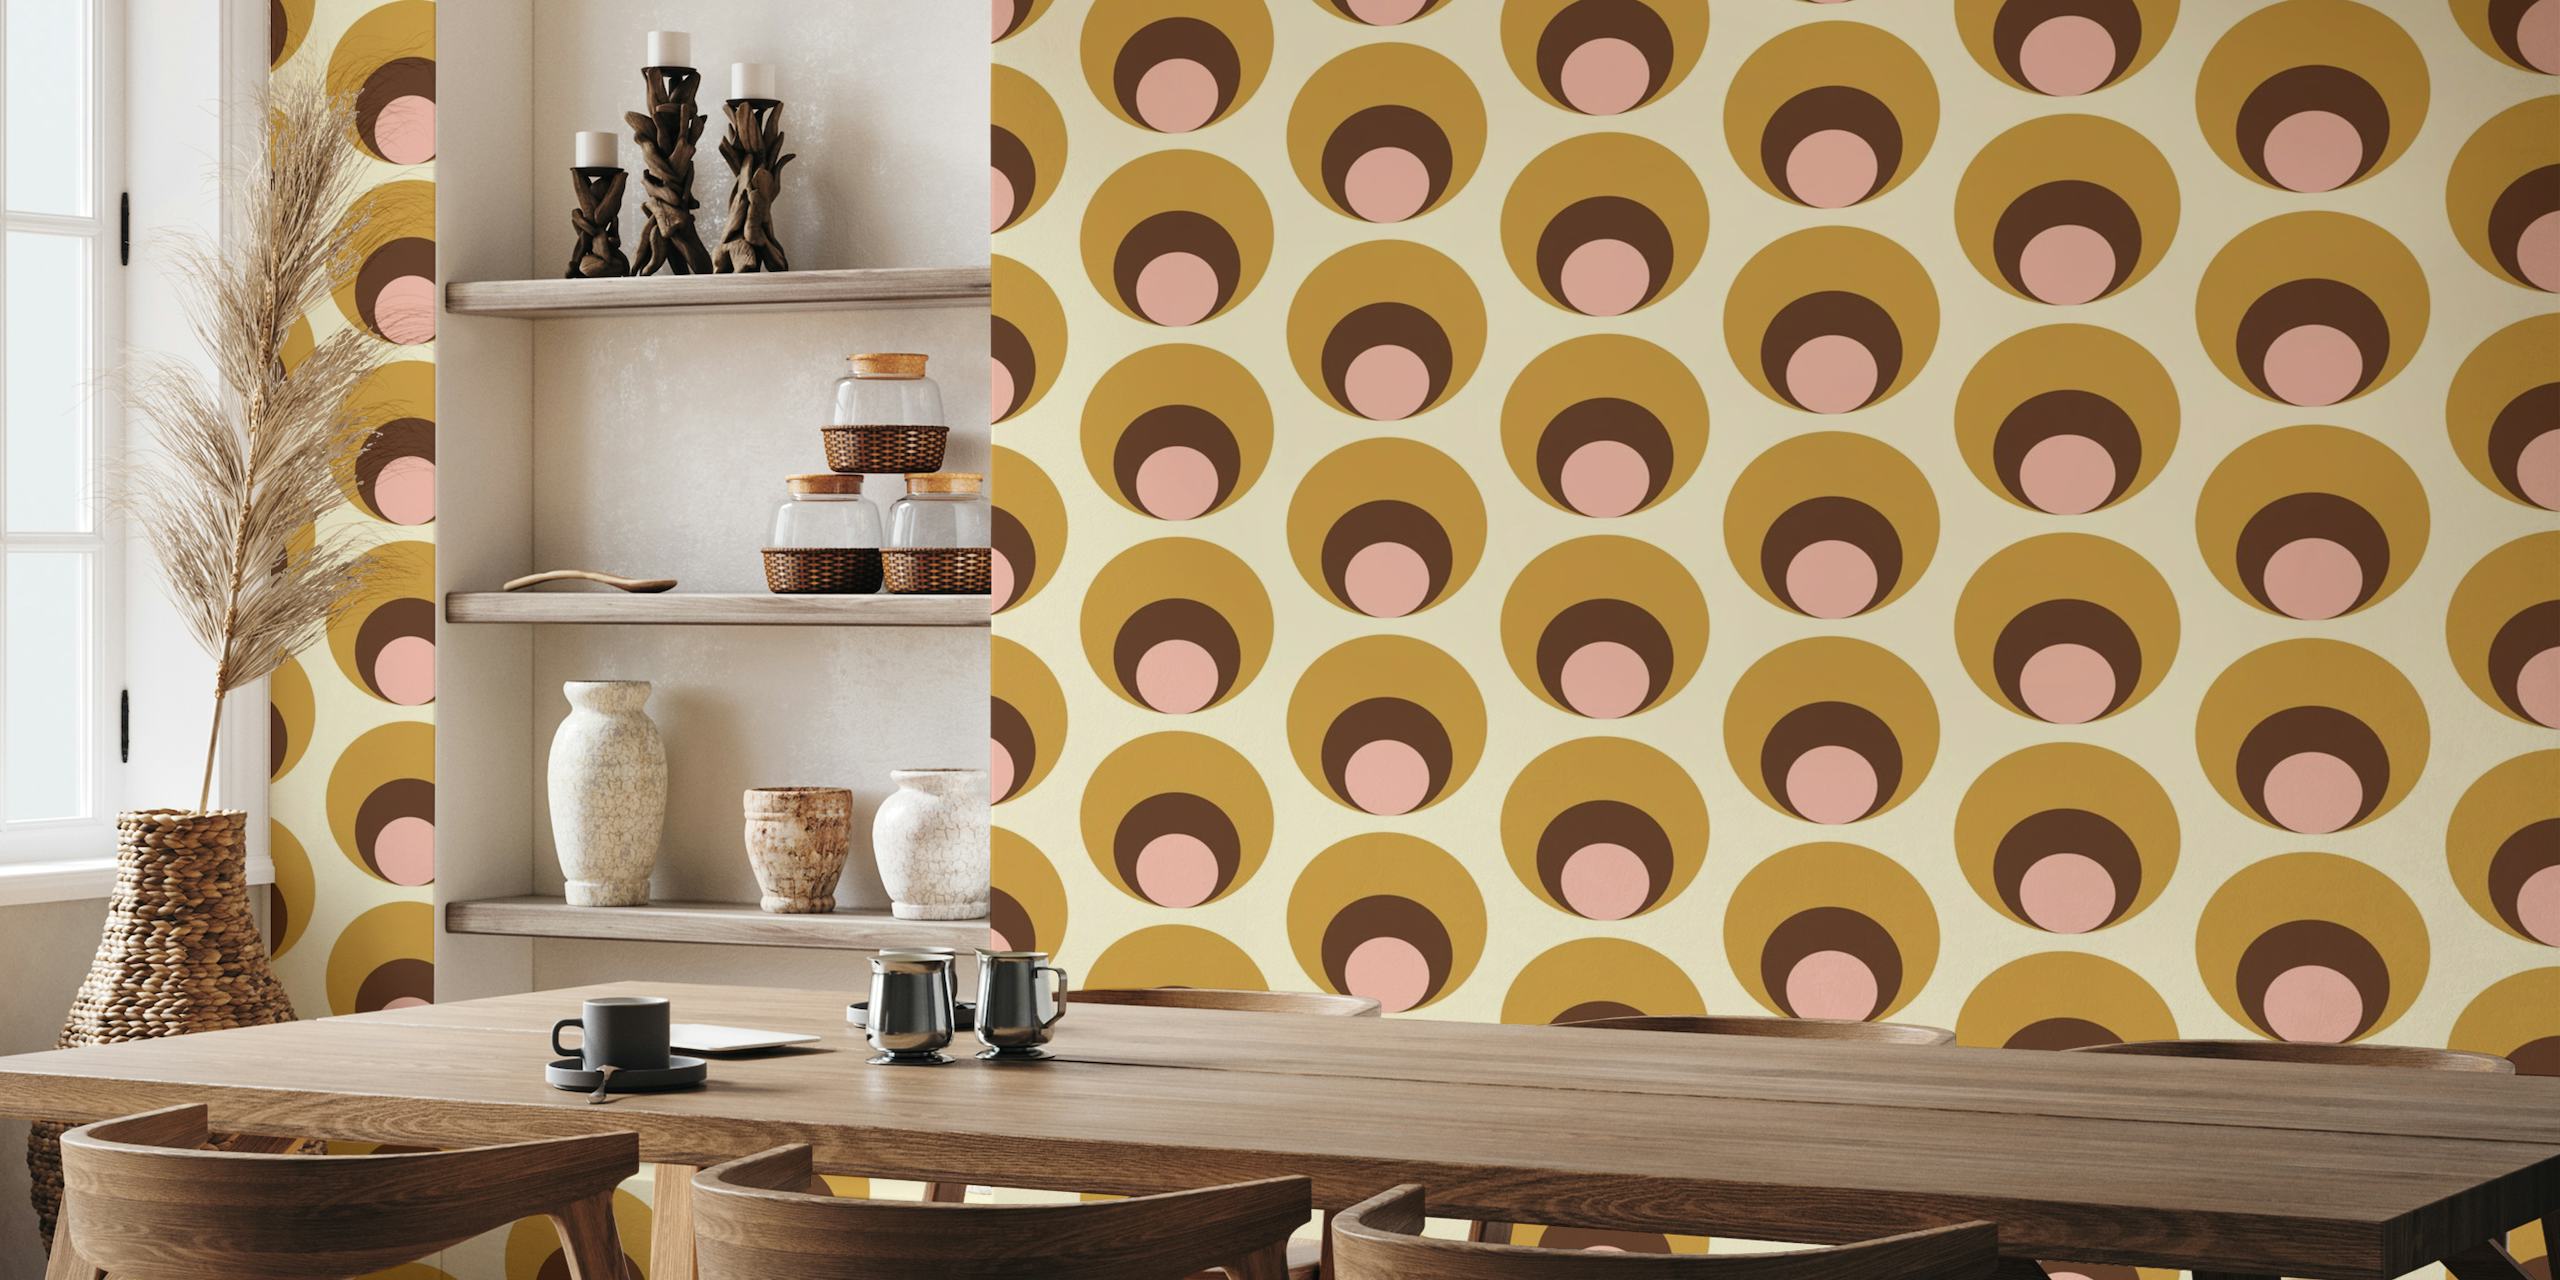 Papier peint beige à pois rétro Apricity avec des cercles superposés dans des tons beige, taupe et blush.